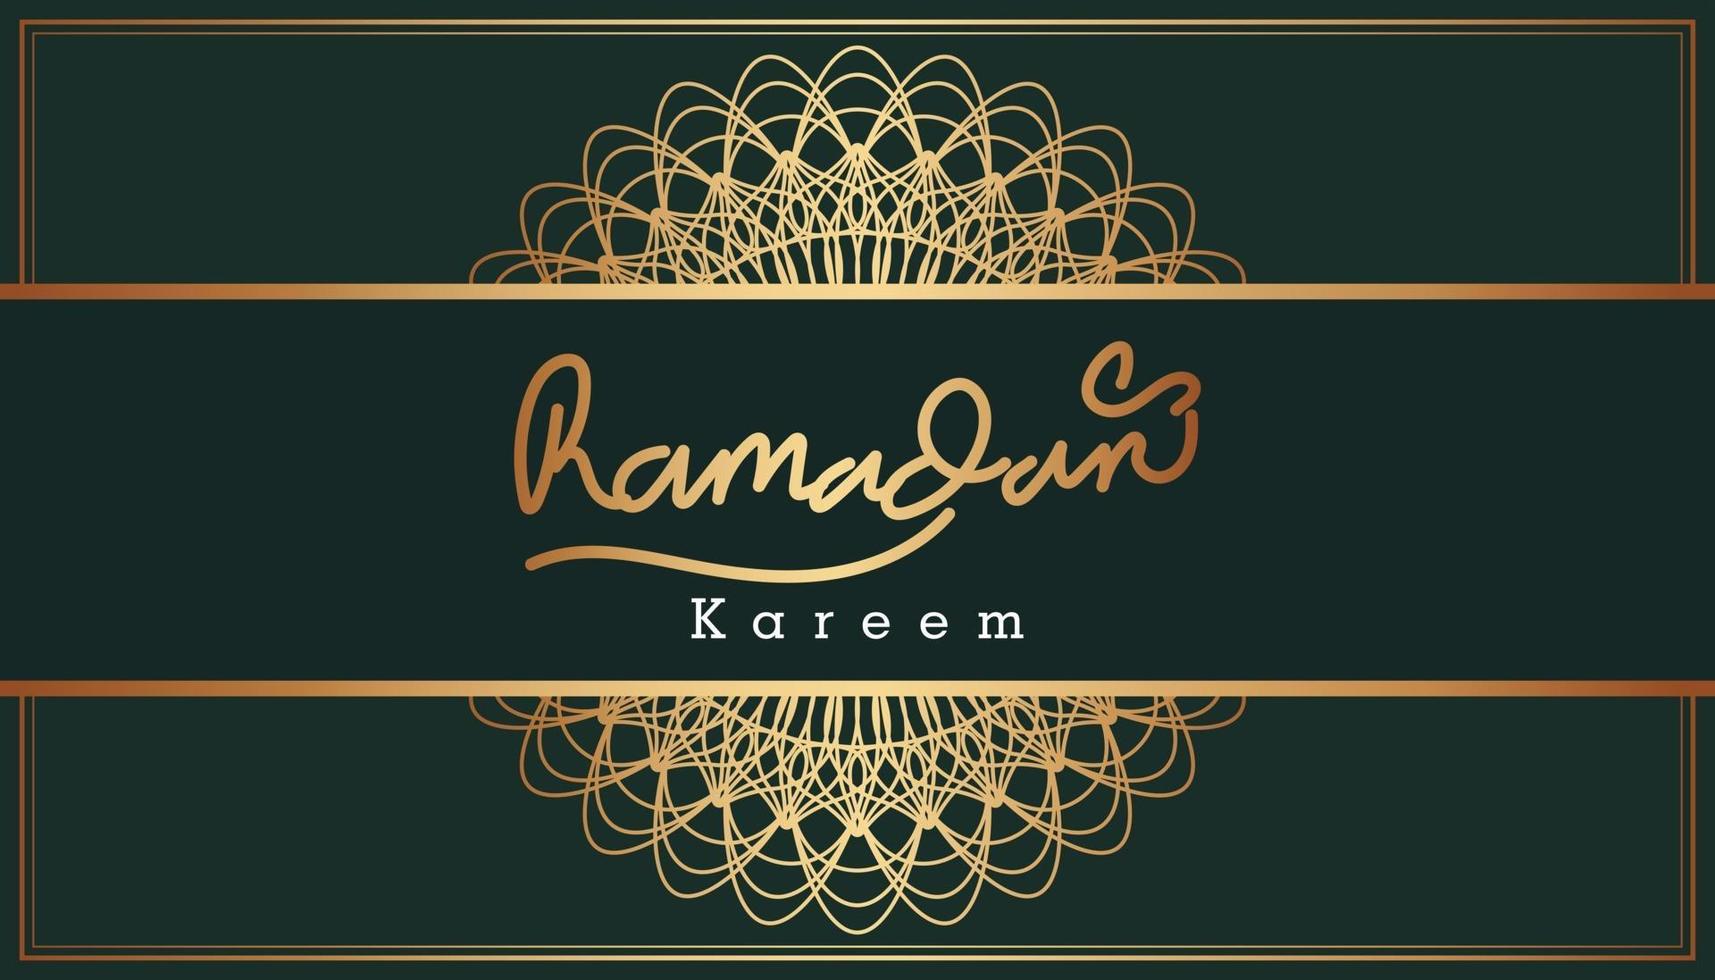 beau texte de ramadan kareem d'or et arrière-plan de conception de motifs ornementaux. illustration vectorielle vecteur